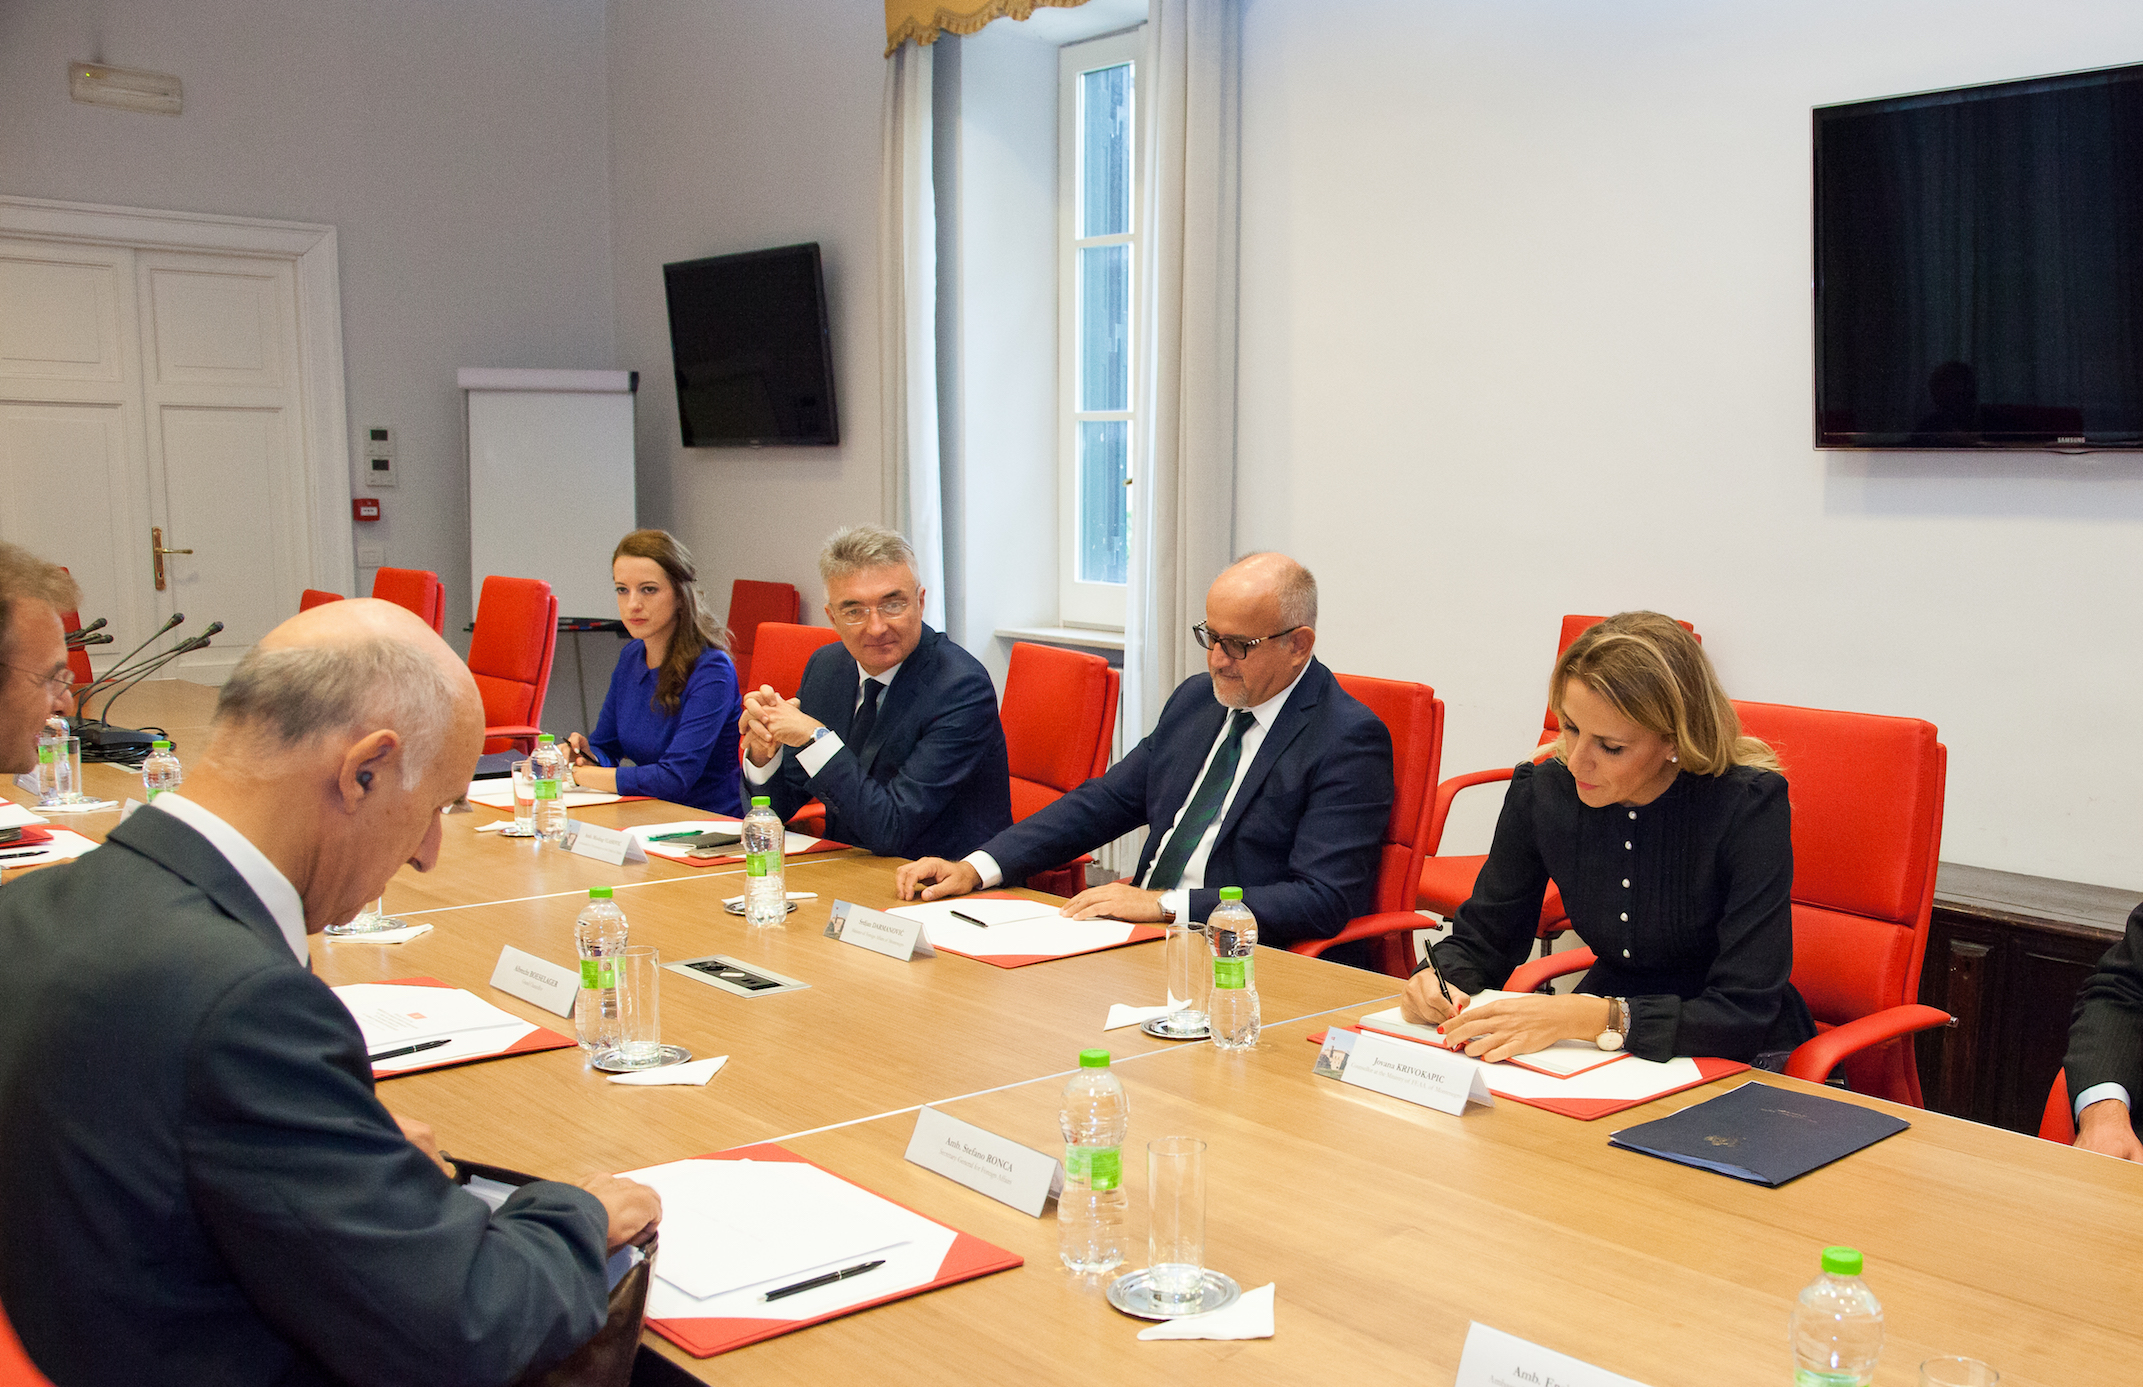 Großkanzler und Außenminister von Montenegro führen in herzlicher Atmosphäre konstruktive Gespräche